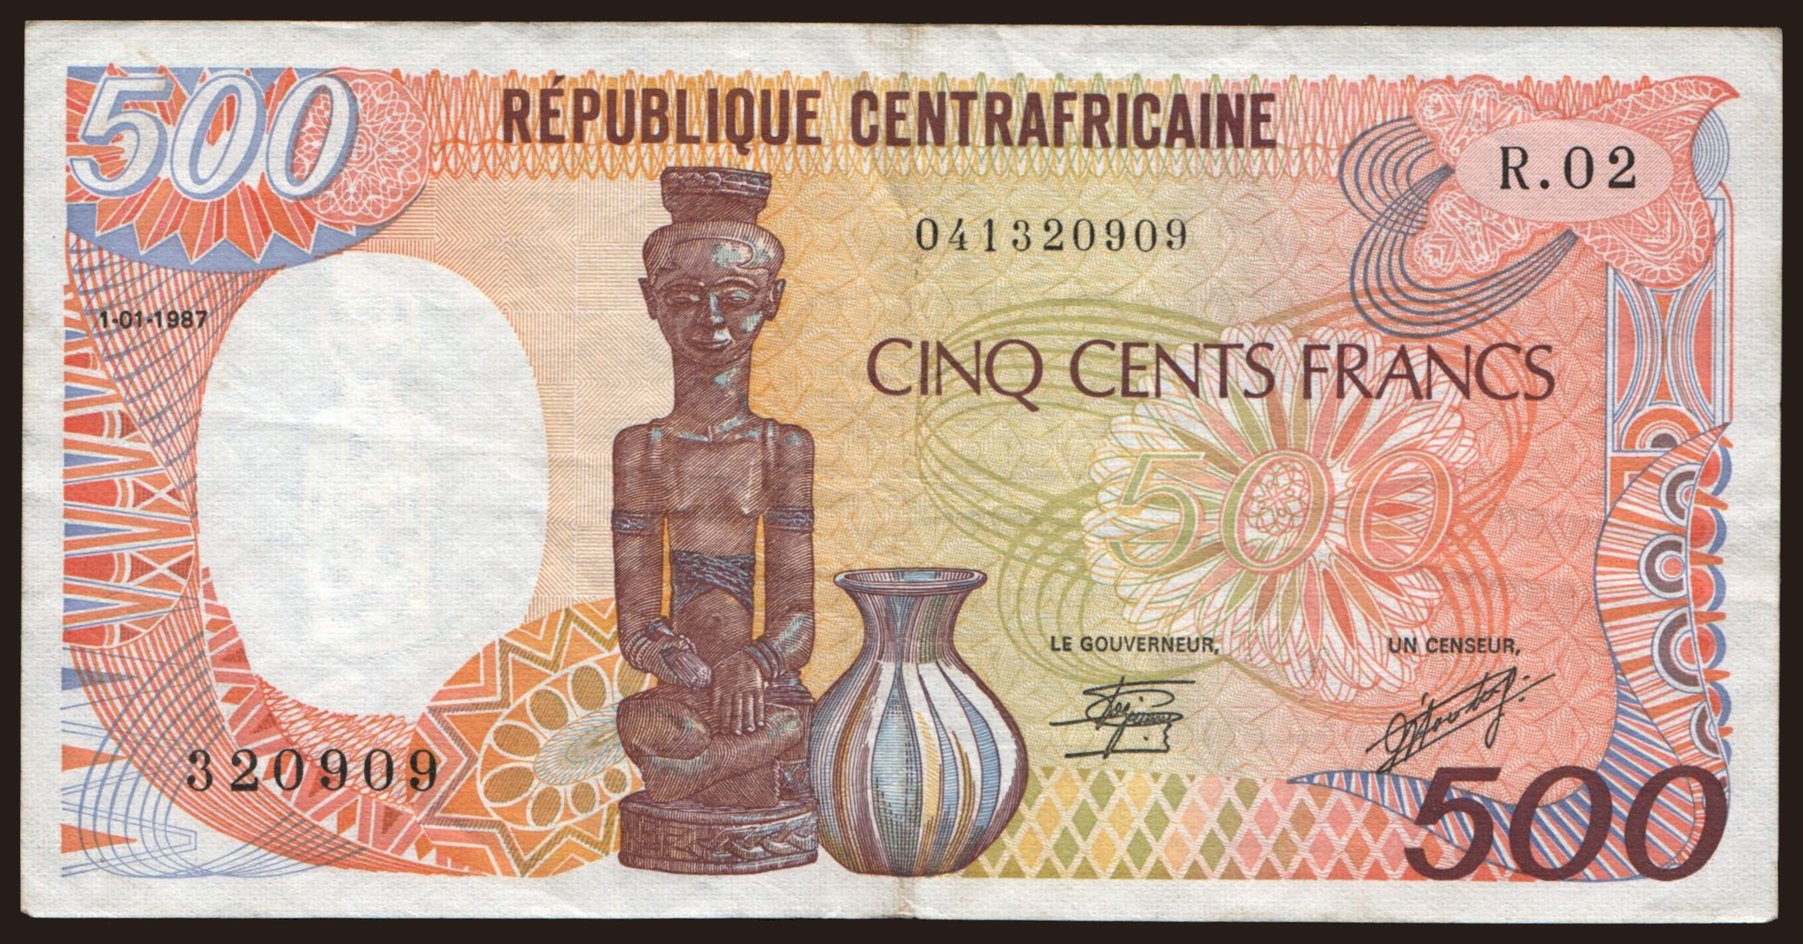 500 francs, 1987